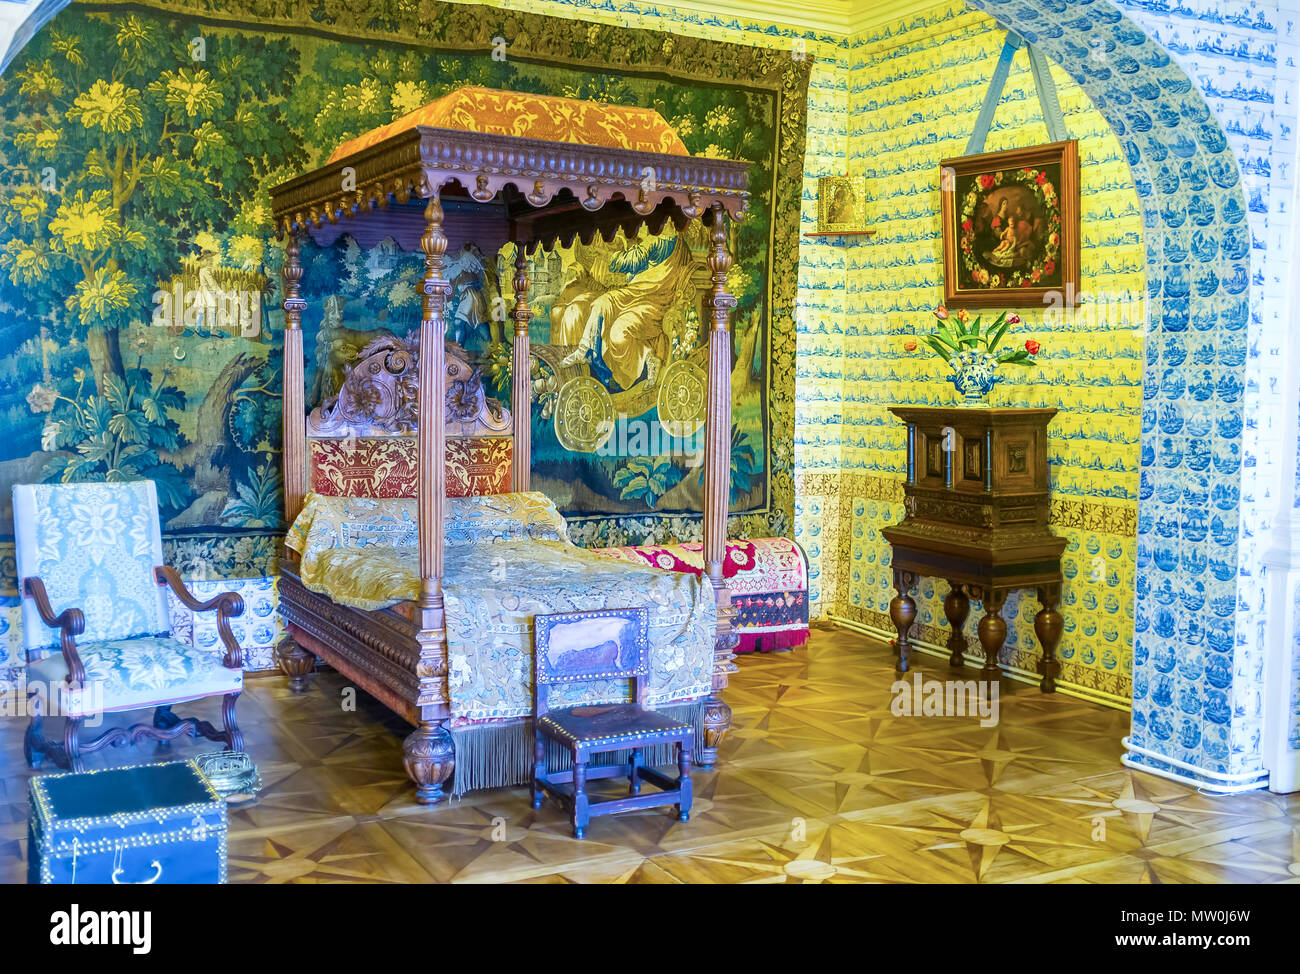 Sankt Petersburg, Russland - 26 April 2015: Das Schlafzimmer der Menschikow-palast reich verziert mit Delfter Kacheln, gestickte Tapisserie und teure Woo Stockfoto